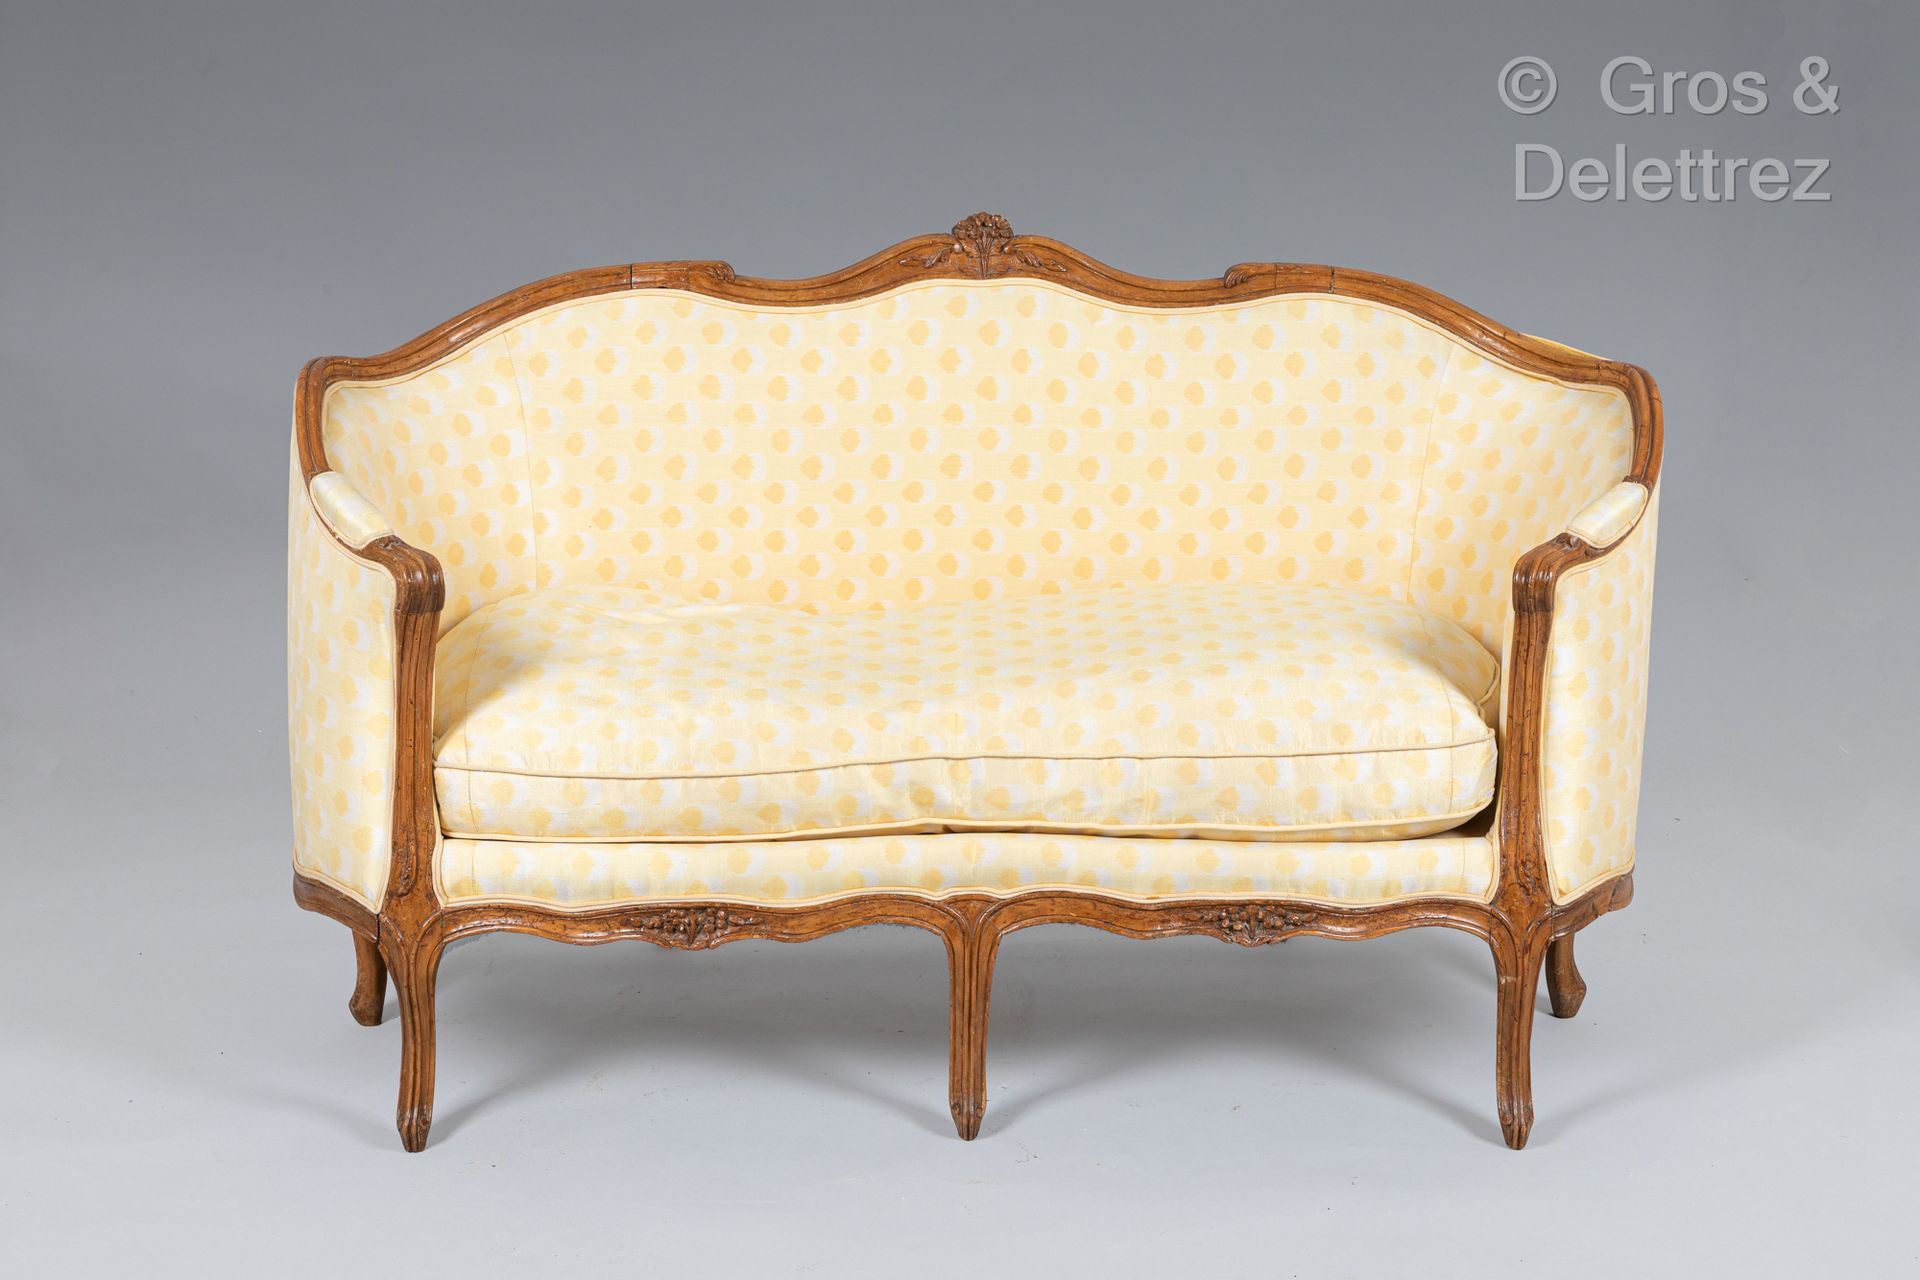 Null 模制雕刻的山毛榉篮形沙发，靠在七条弧形椅腿上。
路易十五时期
92 x 153 x 66 厘米。